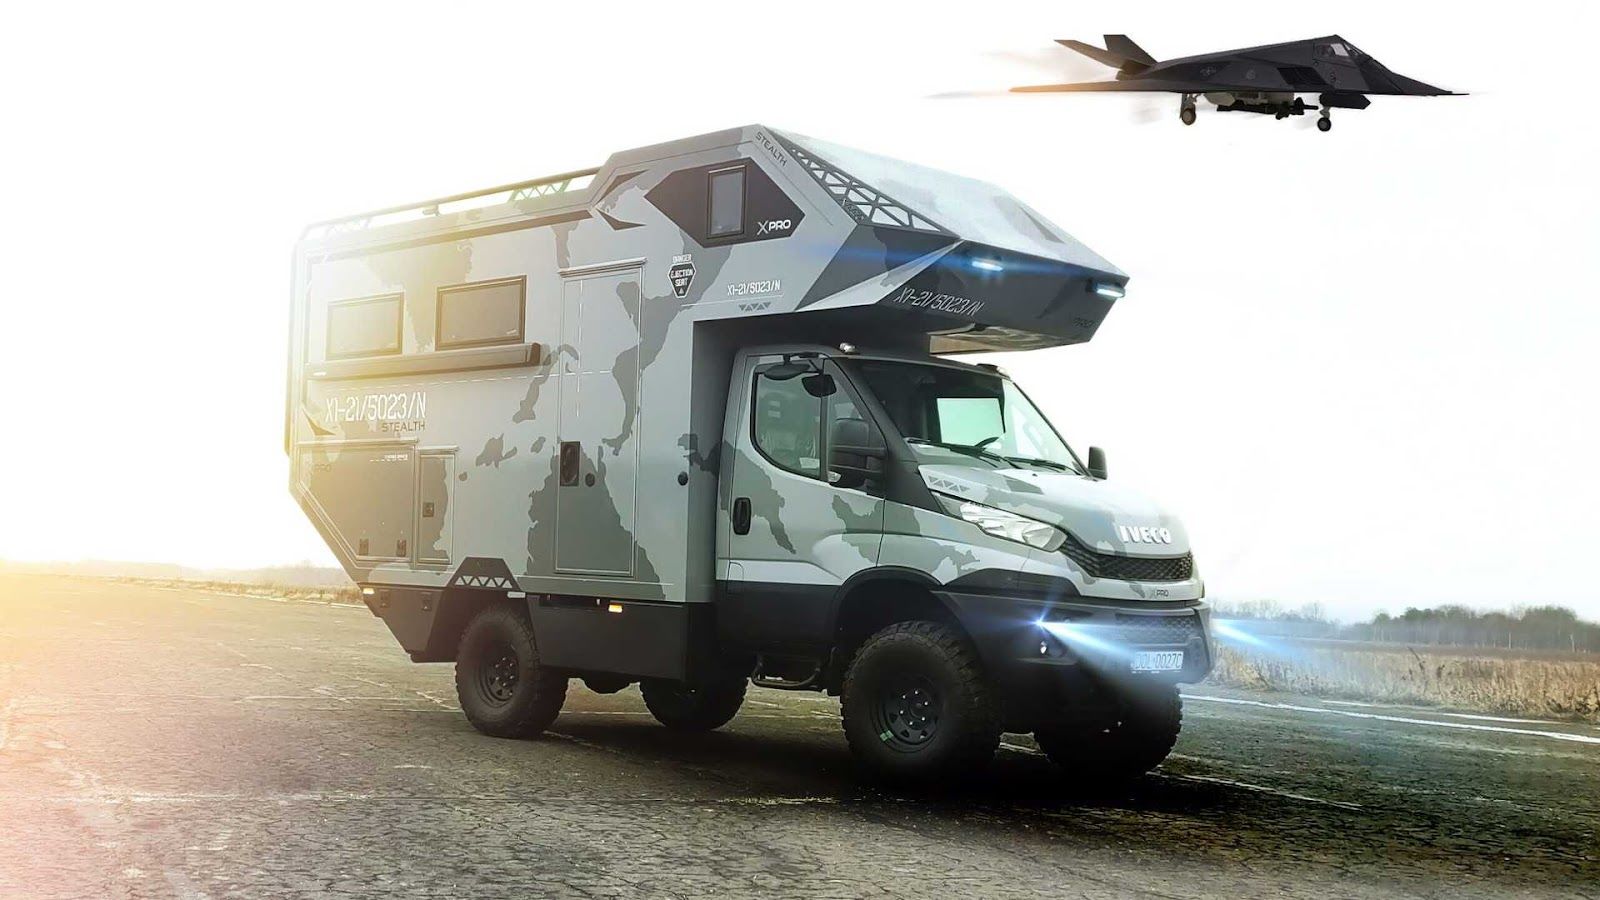 稜角分明的 Xpro One 簡直像是露營車界的隱形戰機